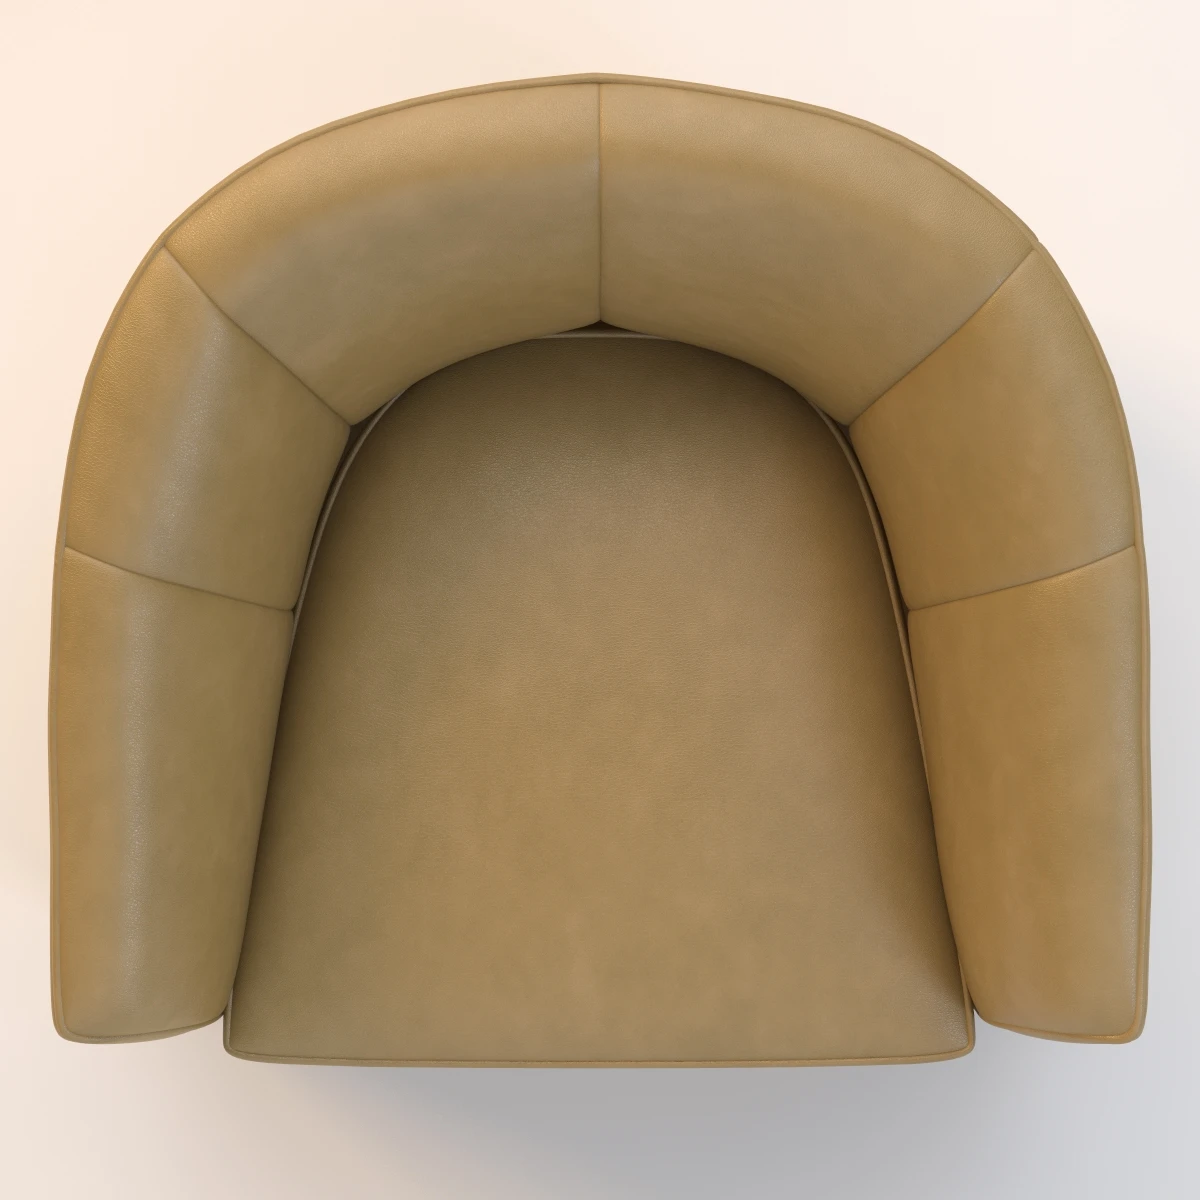 Milo Swivel Slipper Chair 3D Model_07